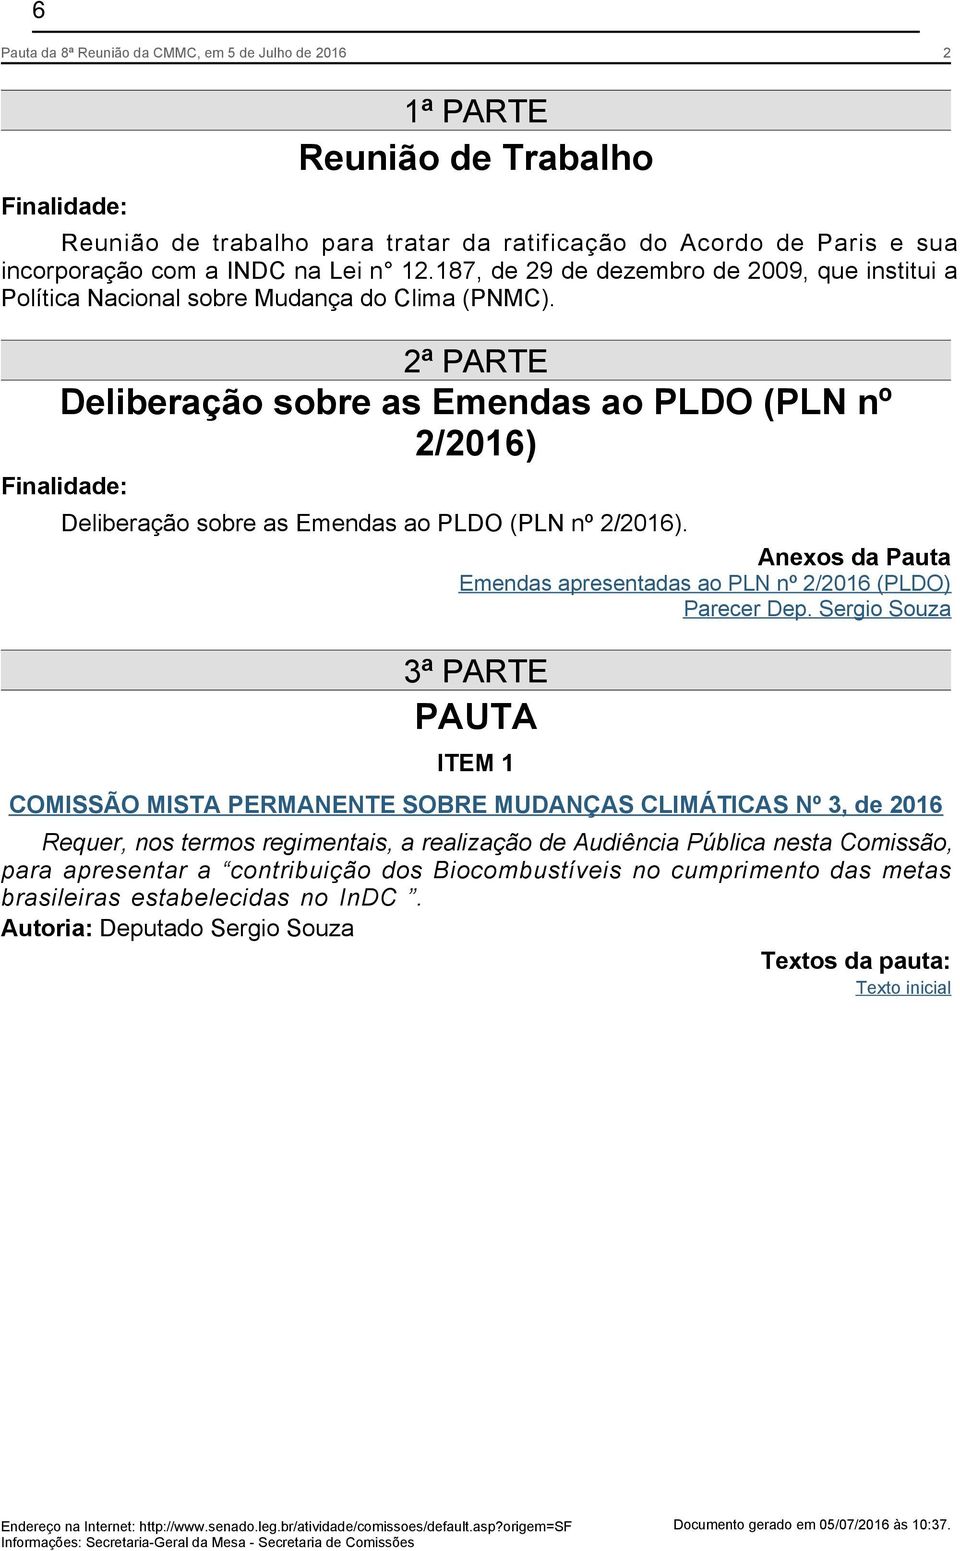 2ª PARTE Deliberação sobre as Emendas ao PLDO (PLN nº 2/2016) Finalidade: Deliberação sobre as Emendas ao PLDO (PLN nº 2/2016).